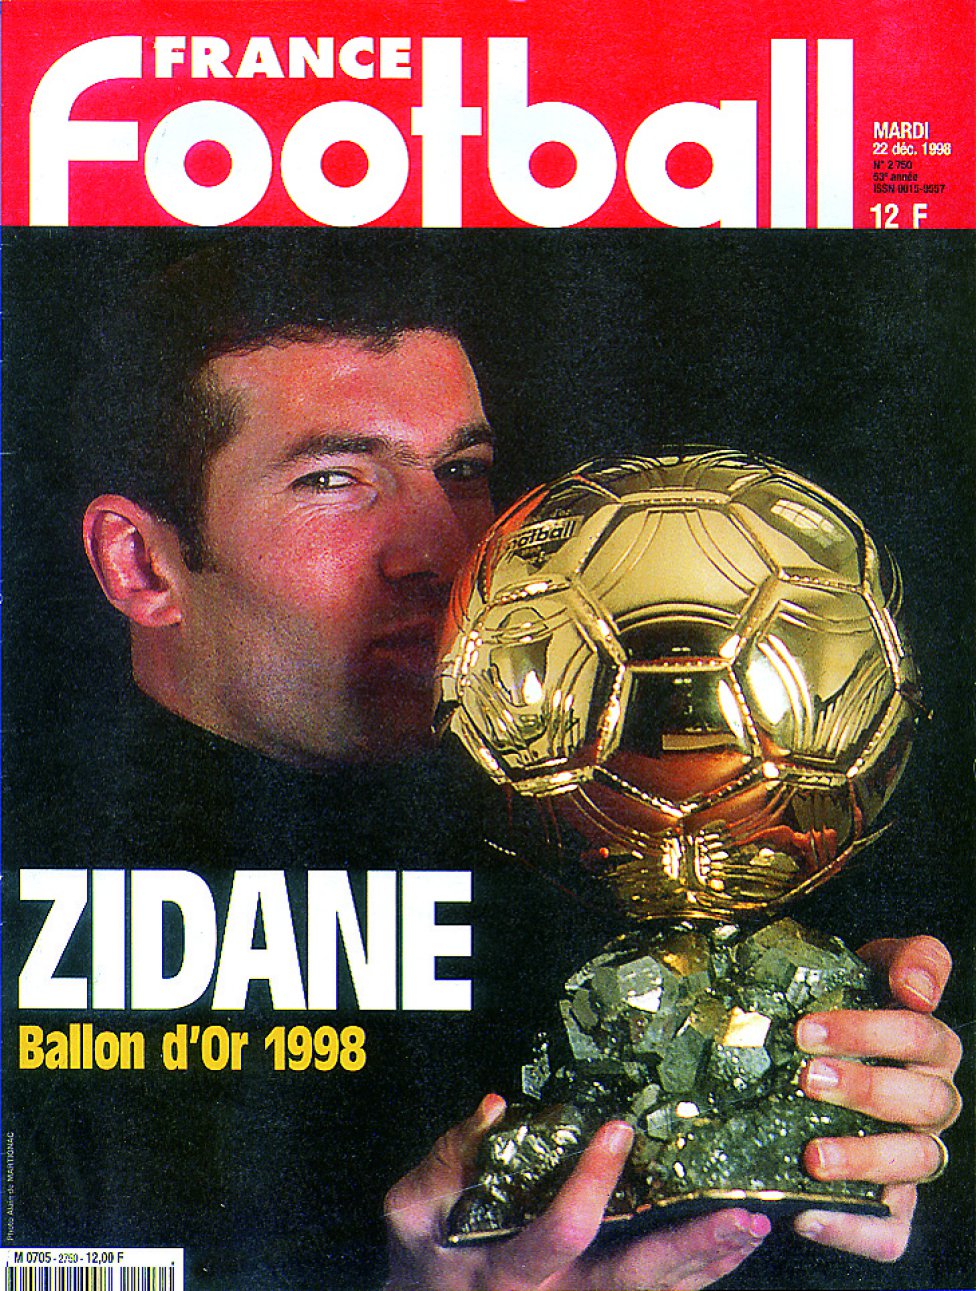 1998. Zidane